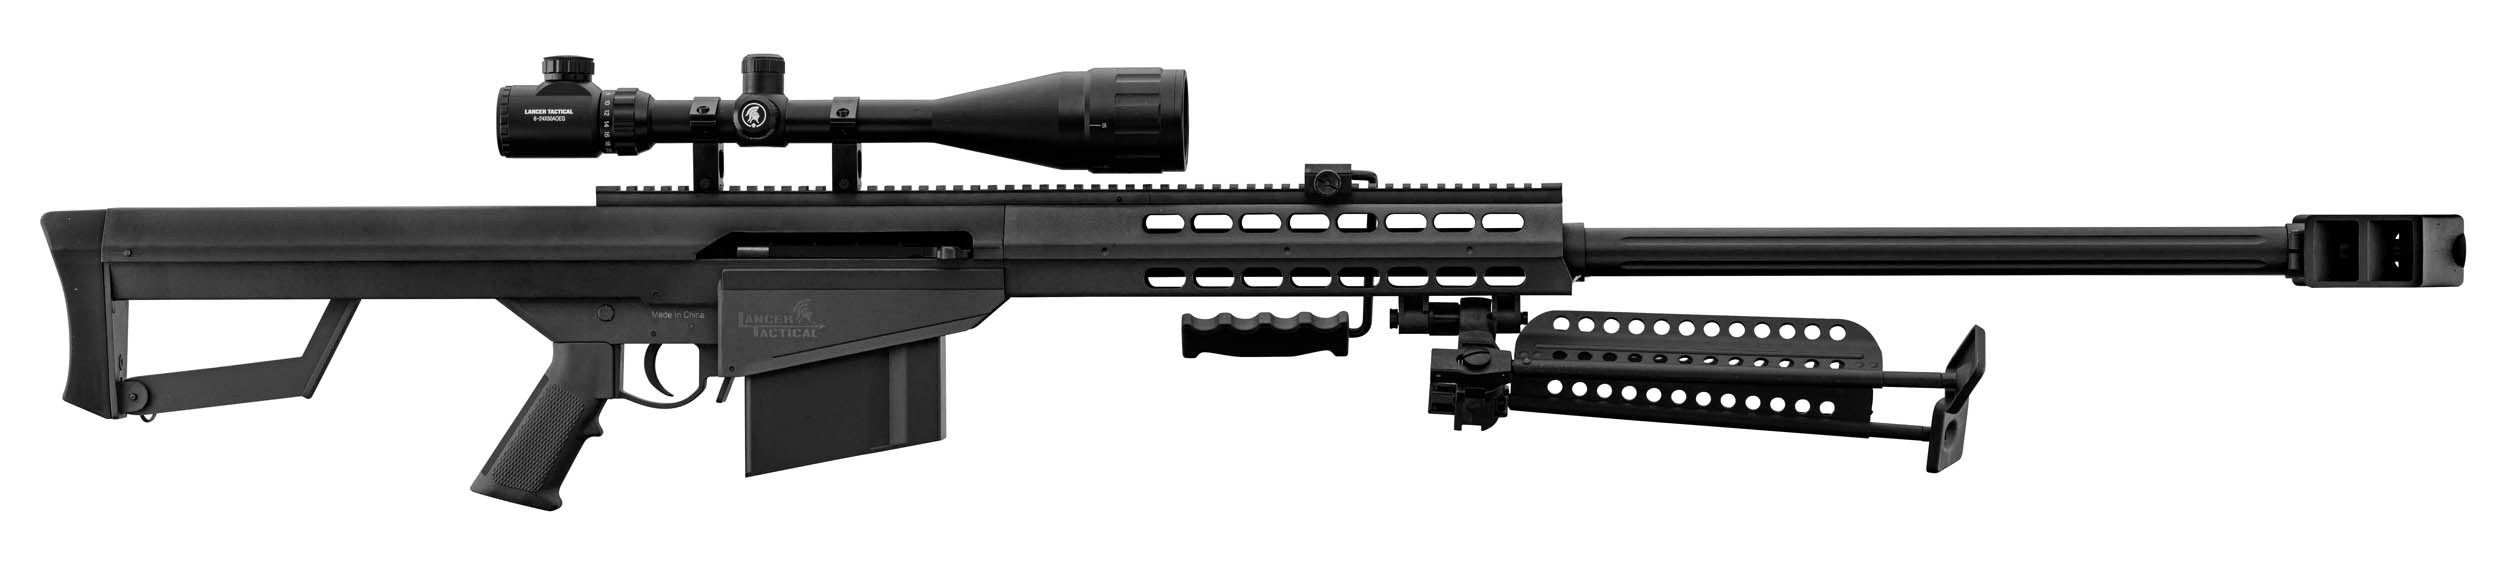 PCKLR3050-10 Pack Sniper LT-20 noir M82 1,5J + lunette + bi-pied + poignée